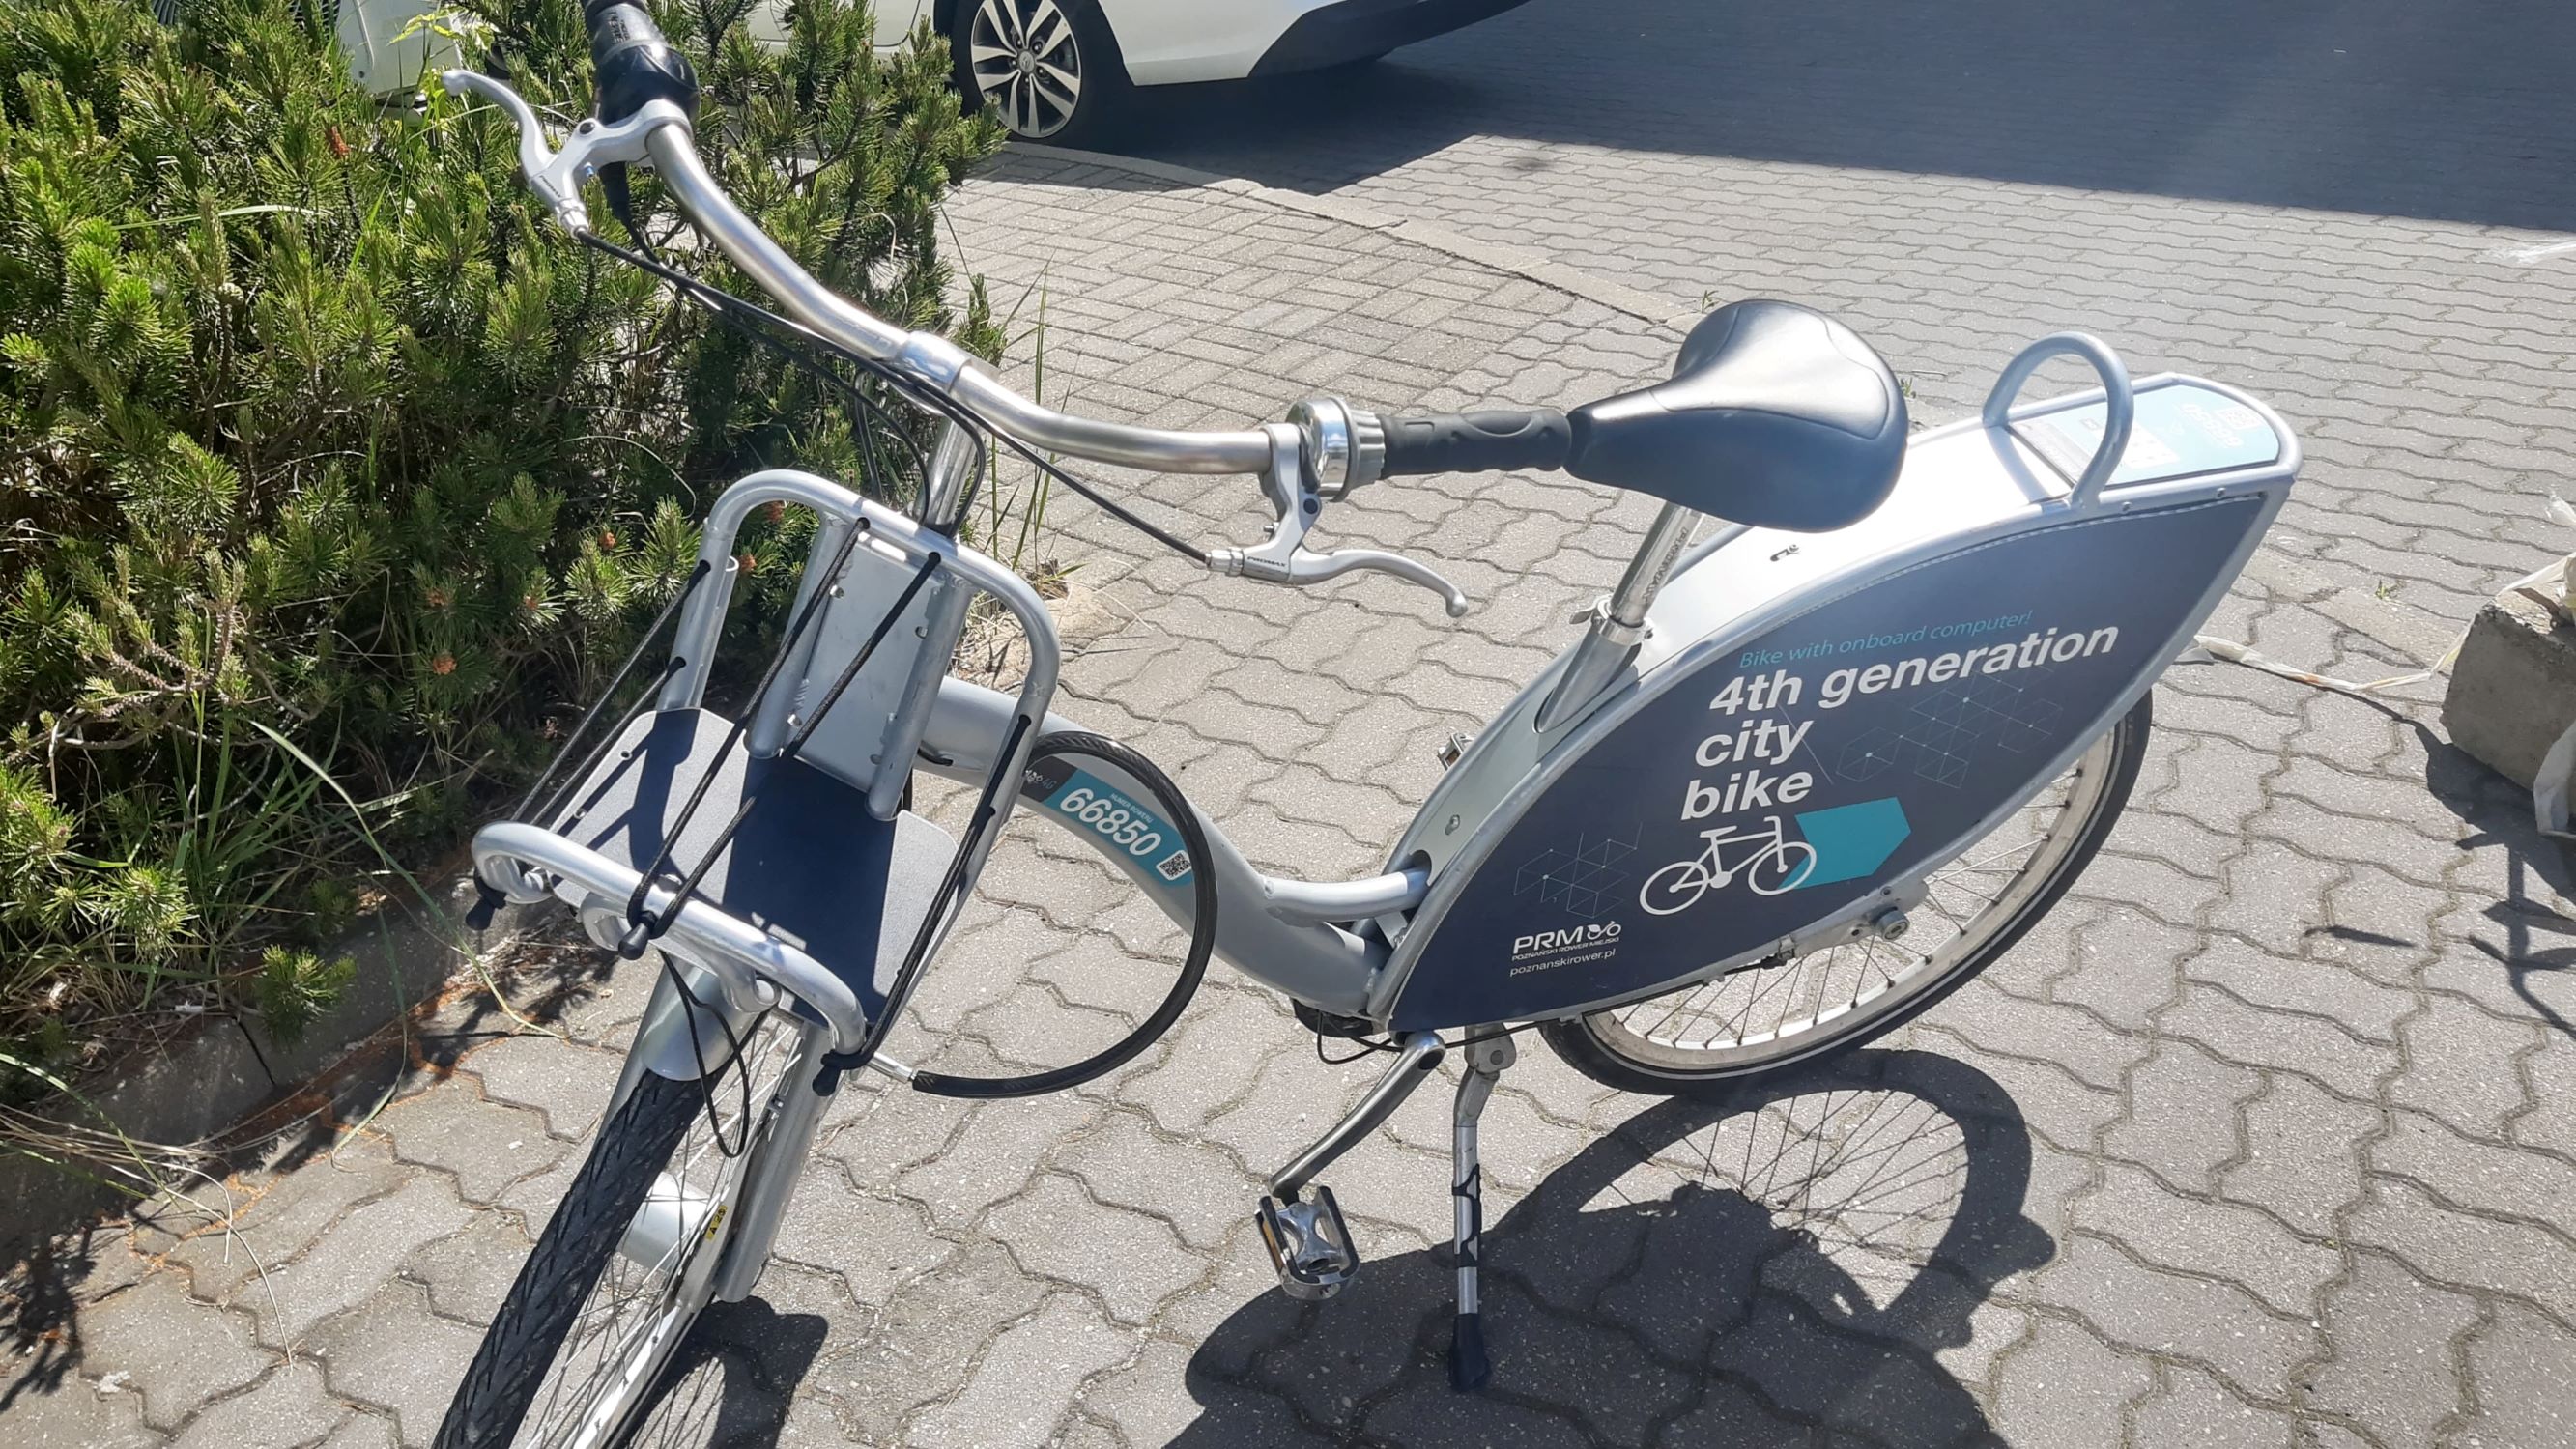 Poznański Rower Miejski czynny do 23 grudnia – zwroty rowerów wyłącznie w granicach miasta